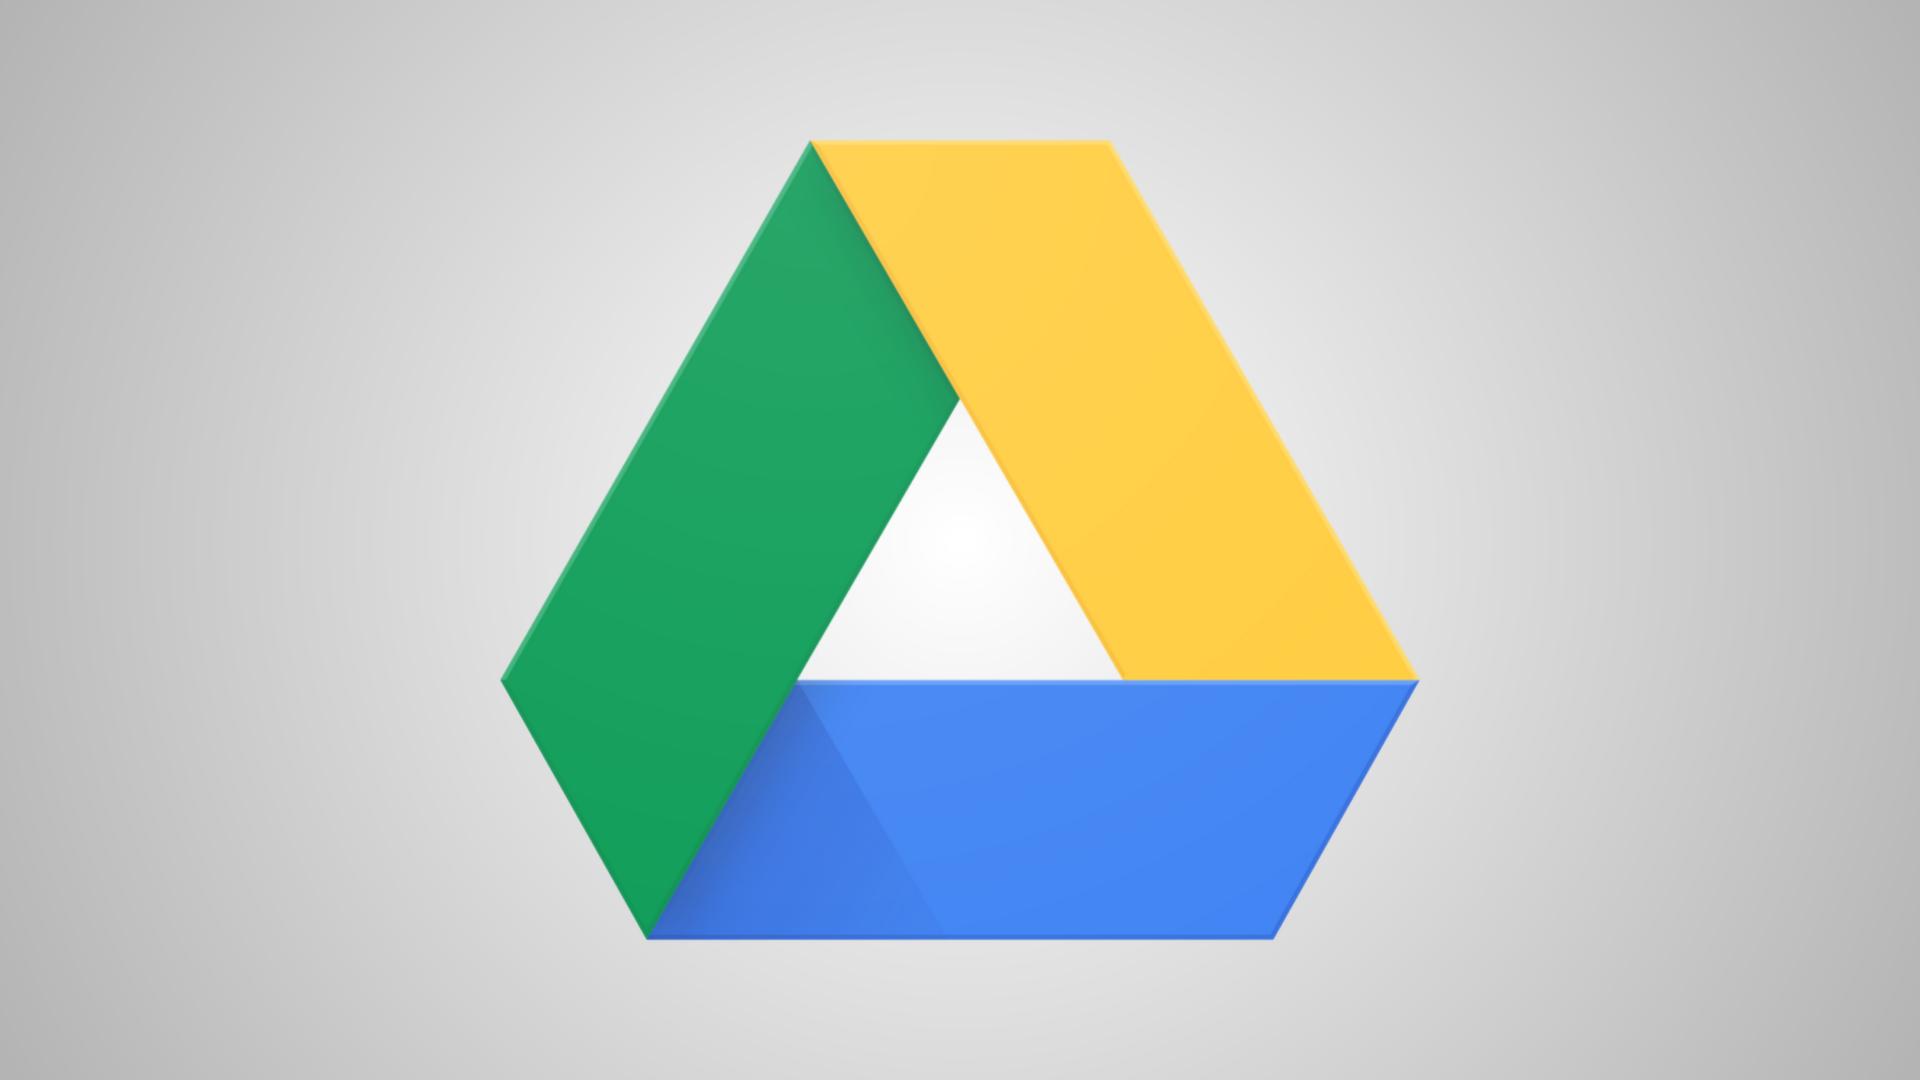 Google Drive 76.0.3 free instals